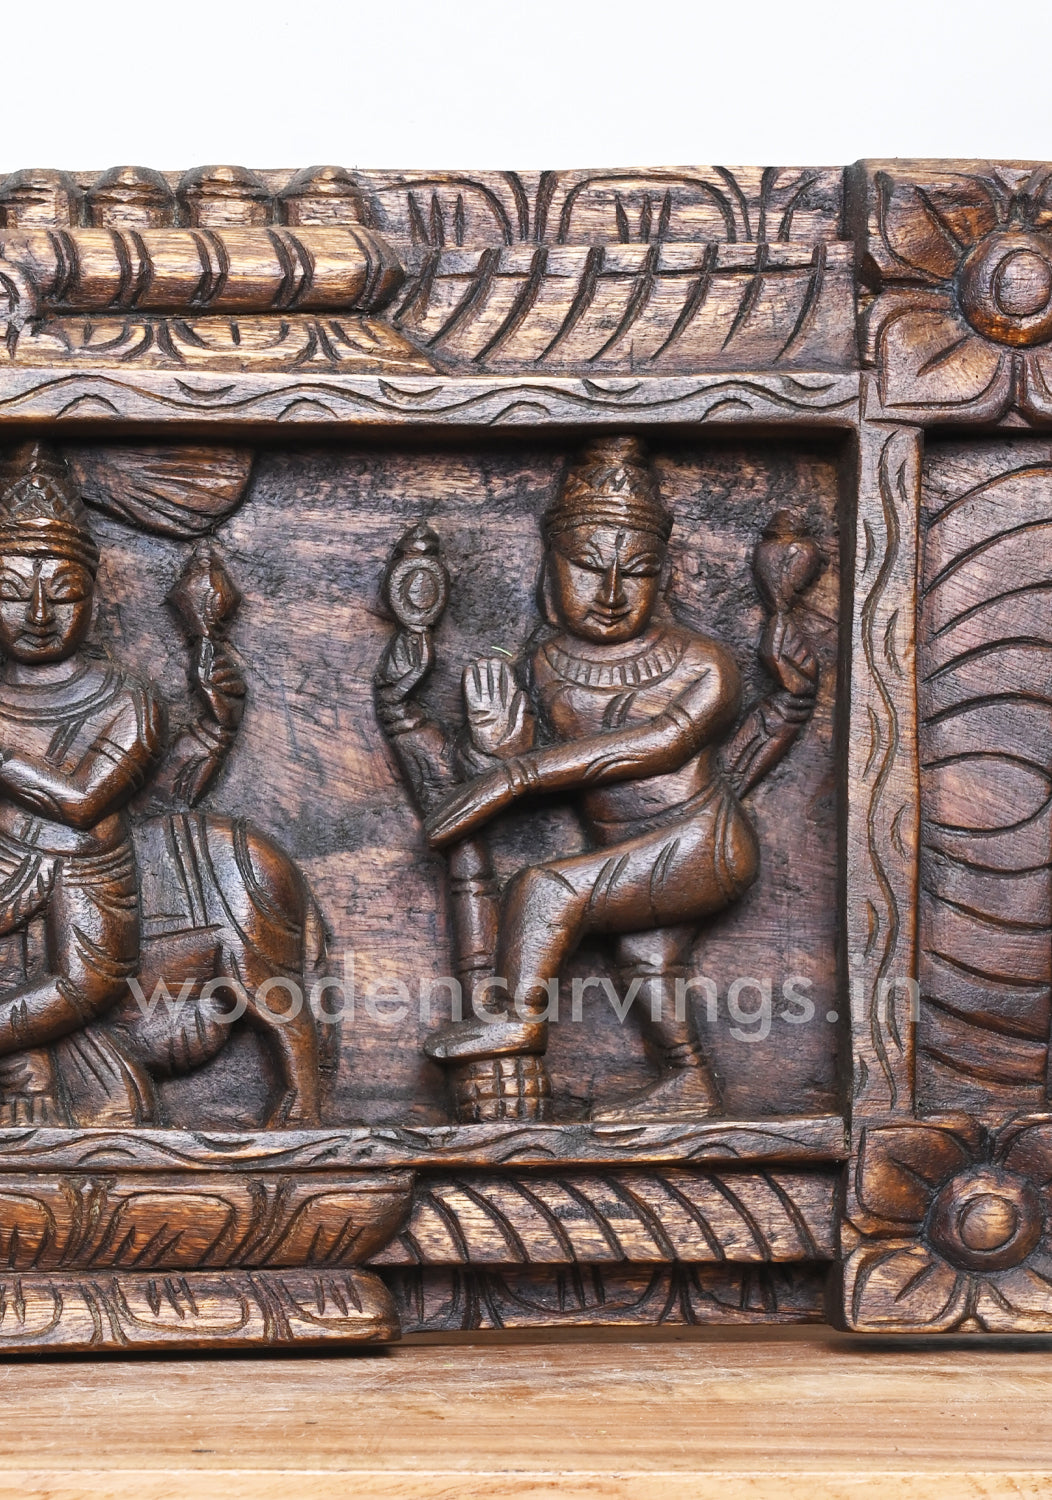 Maha Vishnu With MahaLakshmi and Nararthar, Krishnan, Hanuman Horizontal Wall Panel 48"